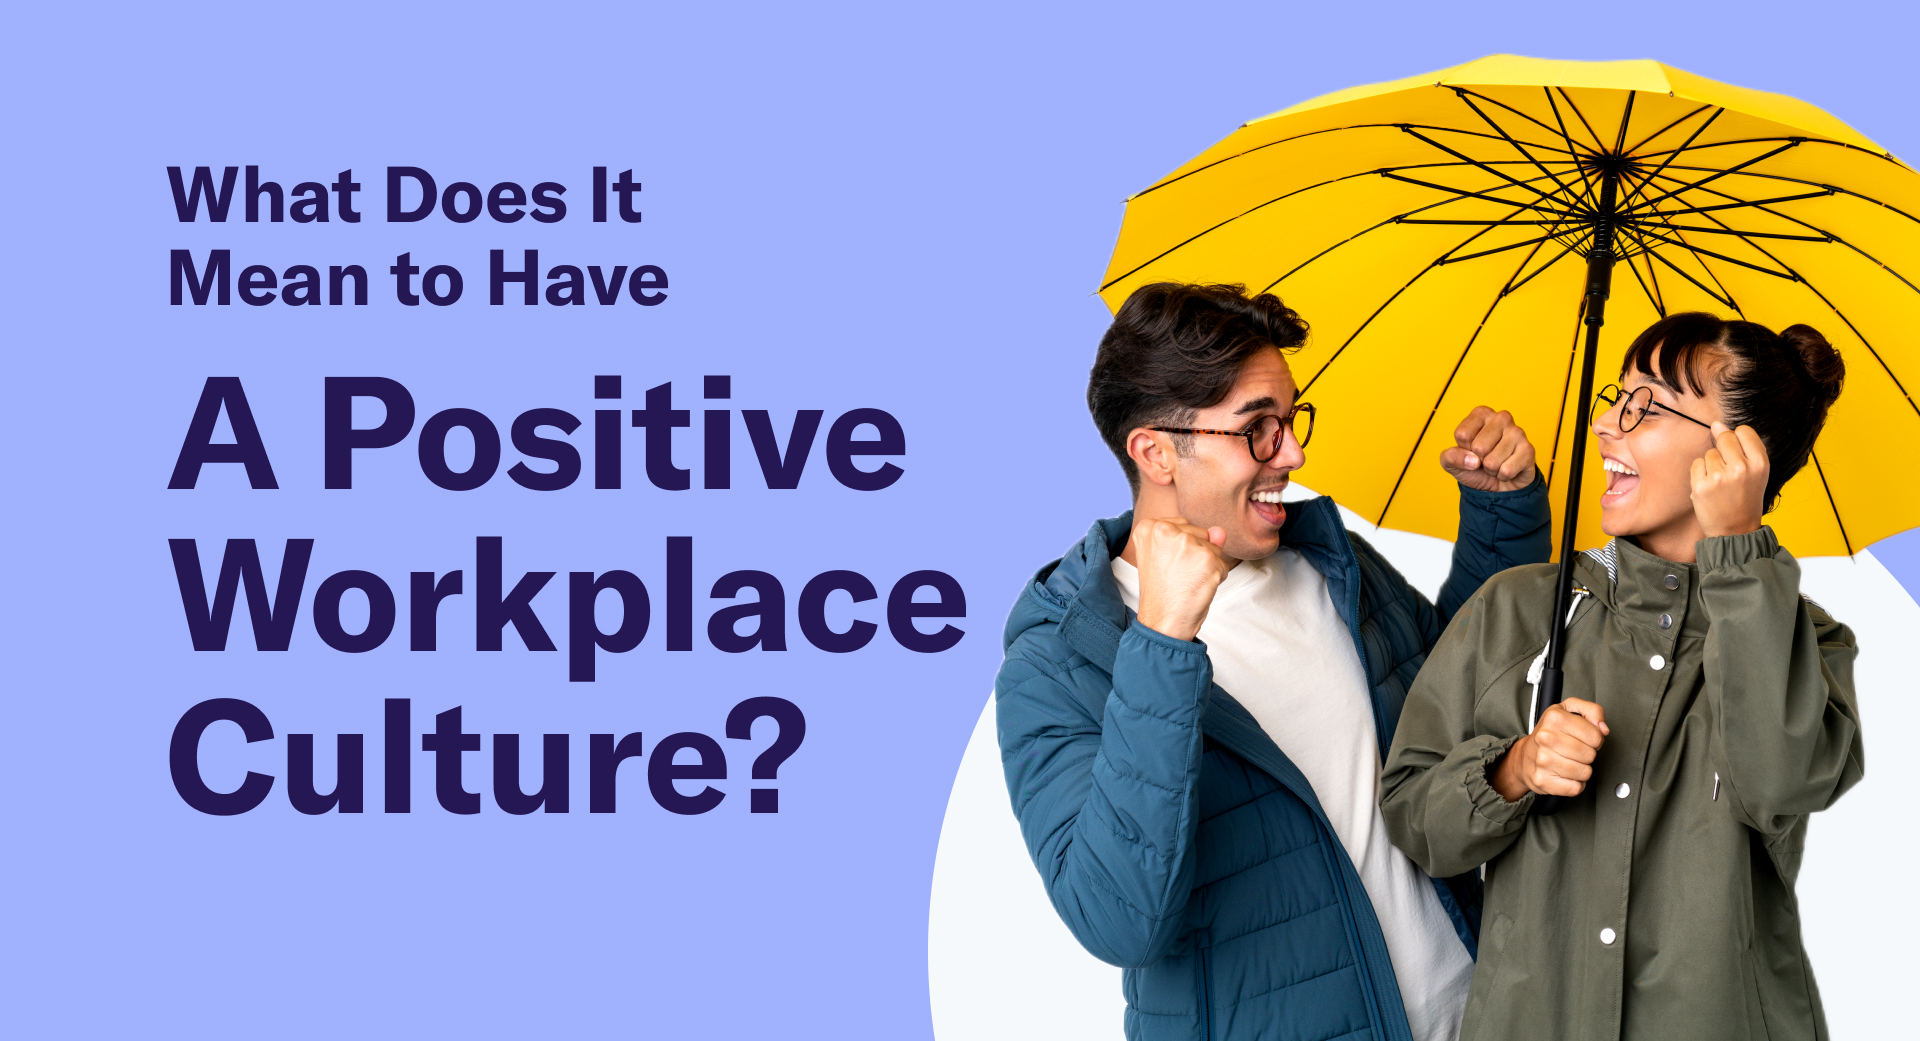 सकारात्मक कार्यस्थल-संस्कृति का क्या मतलब है?